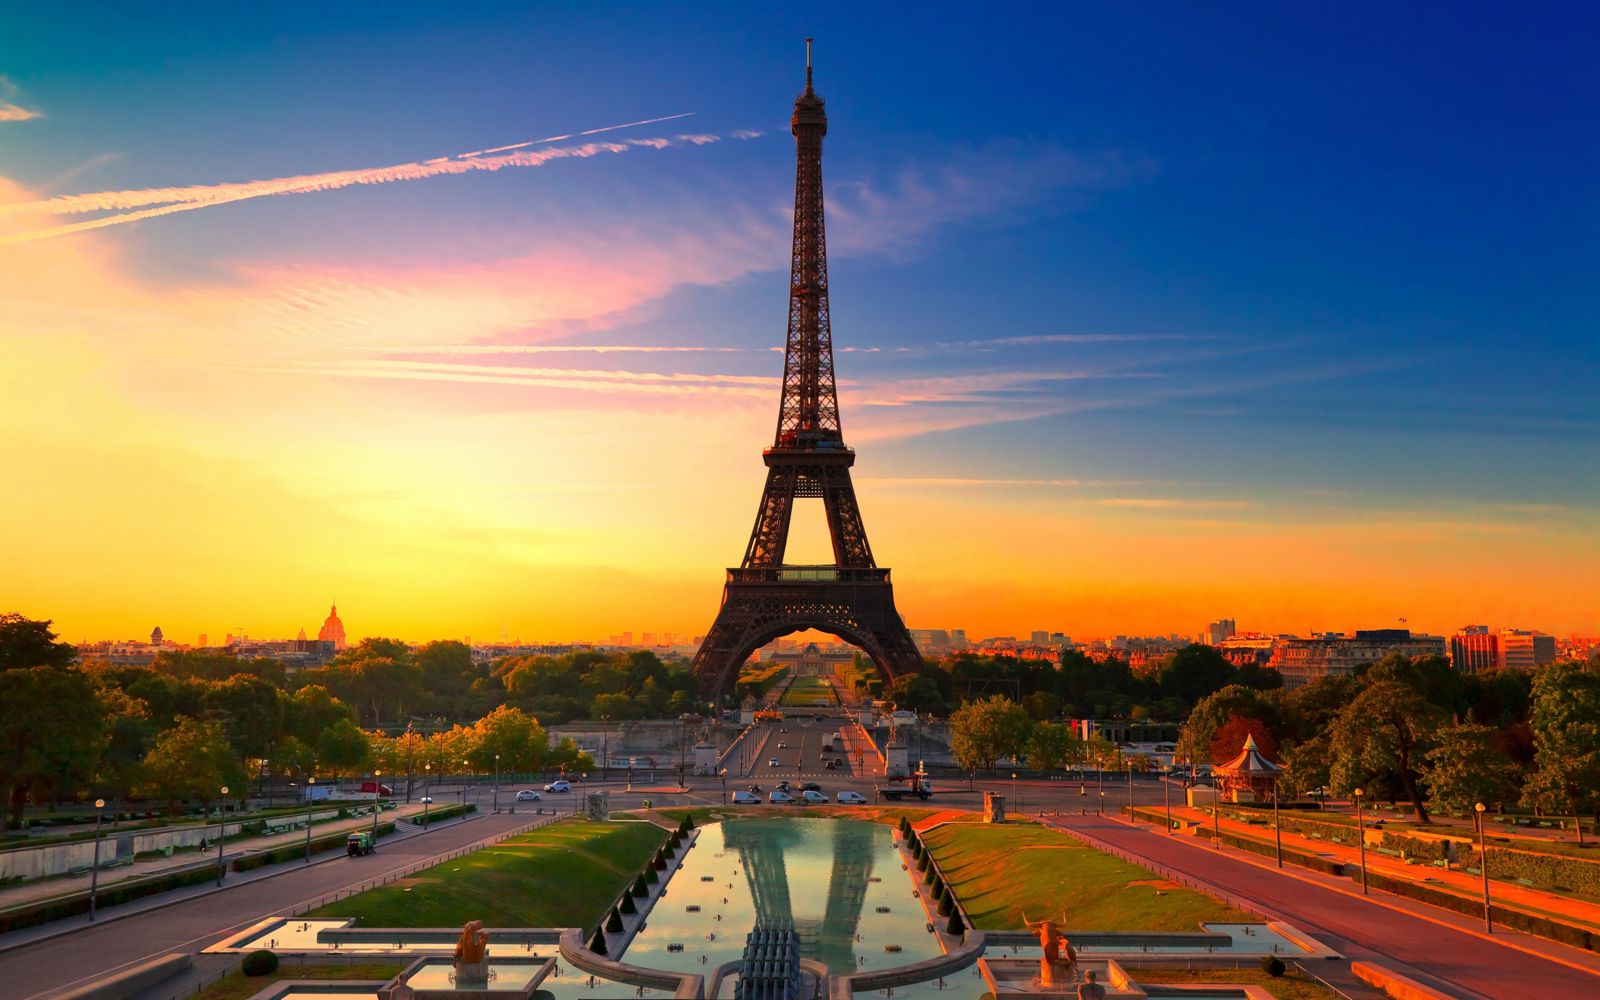 تور فرانسه با پرواز مستقیم و اقامت 5 روزه در بهترین هتل های کشور فرانسه